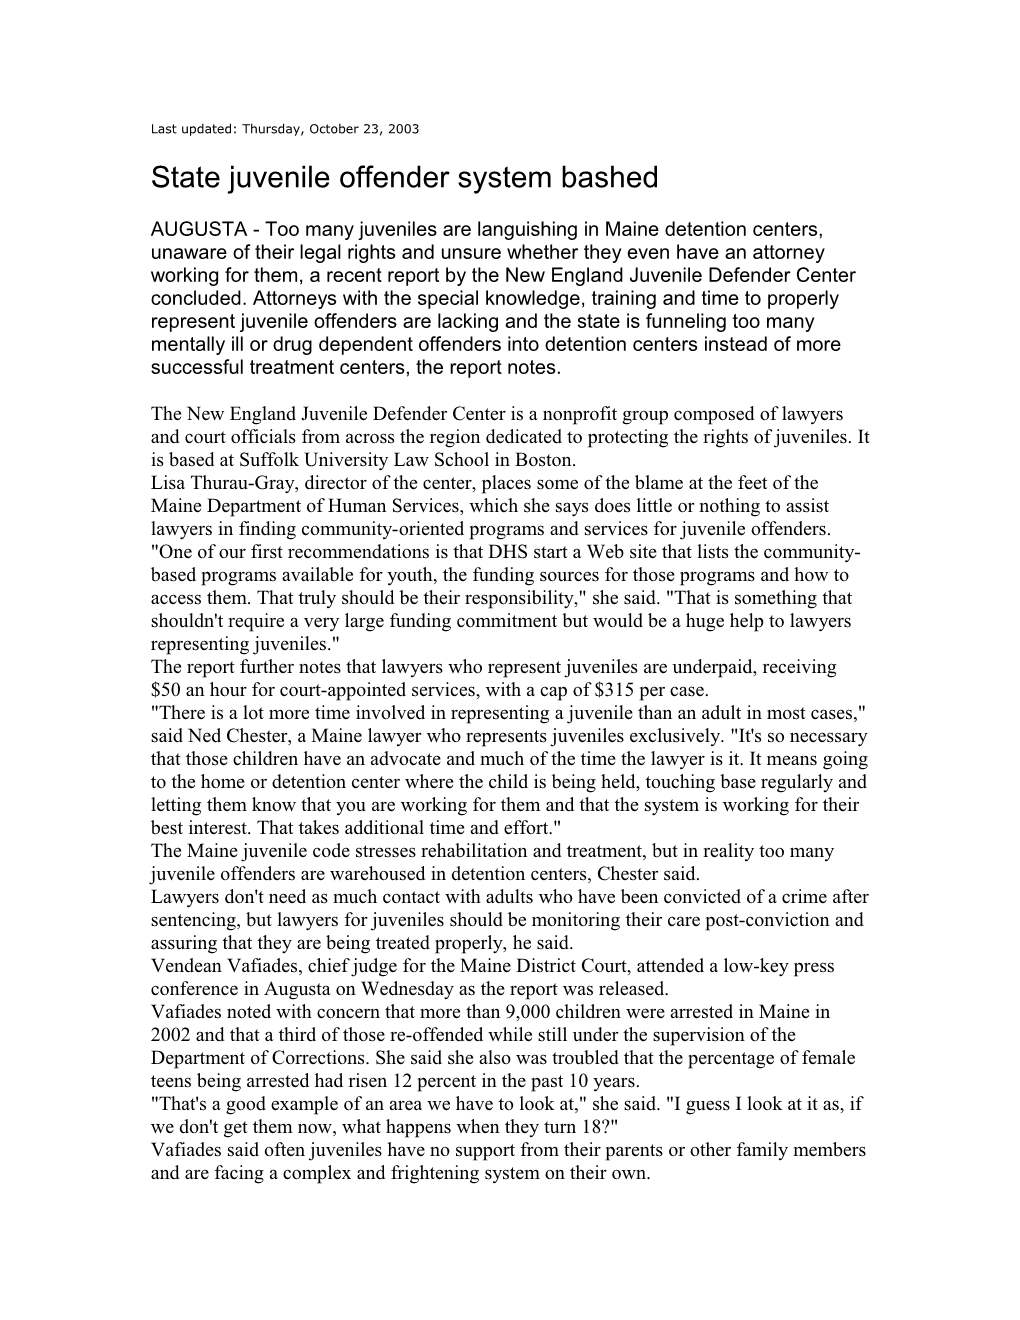 State Juvenile Offender System Bashed